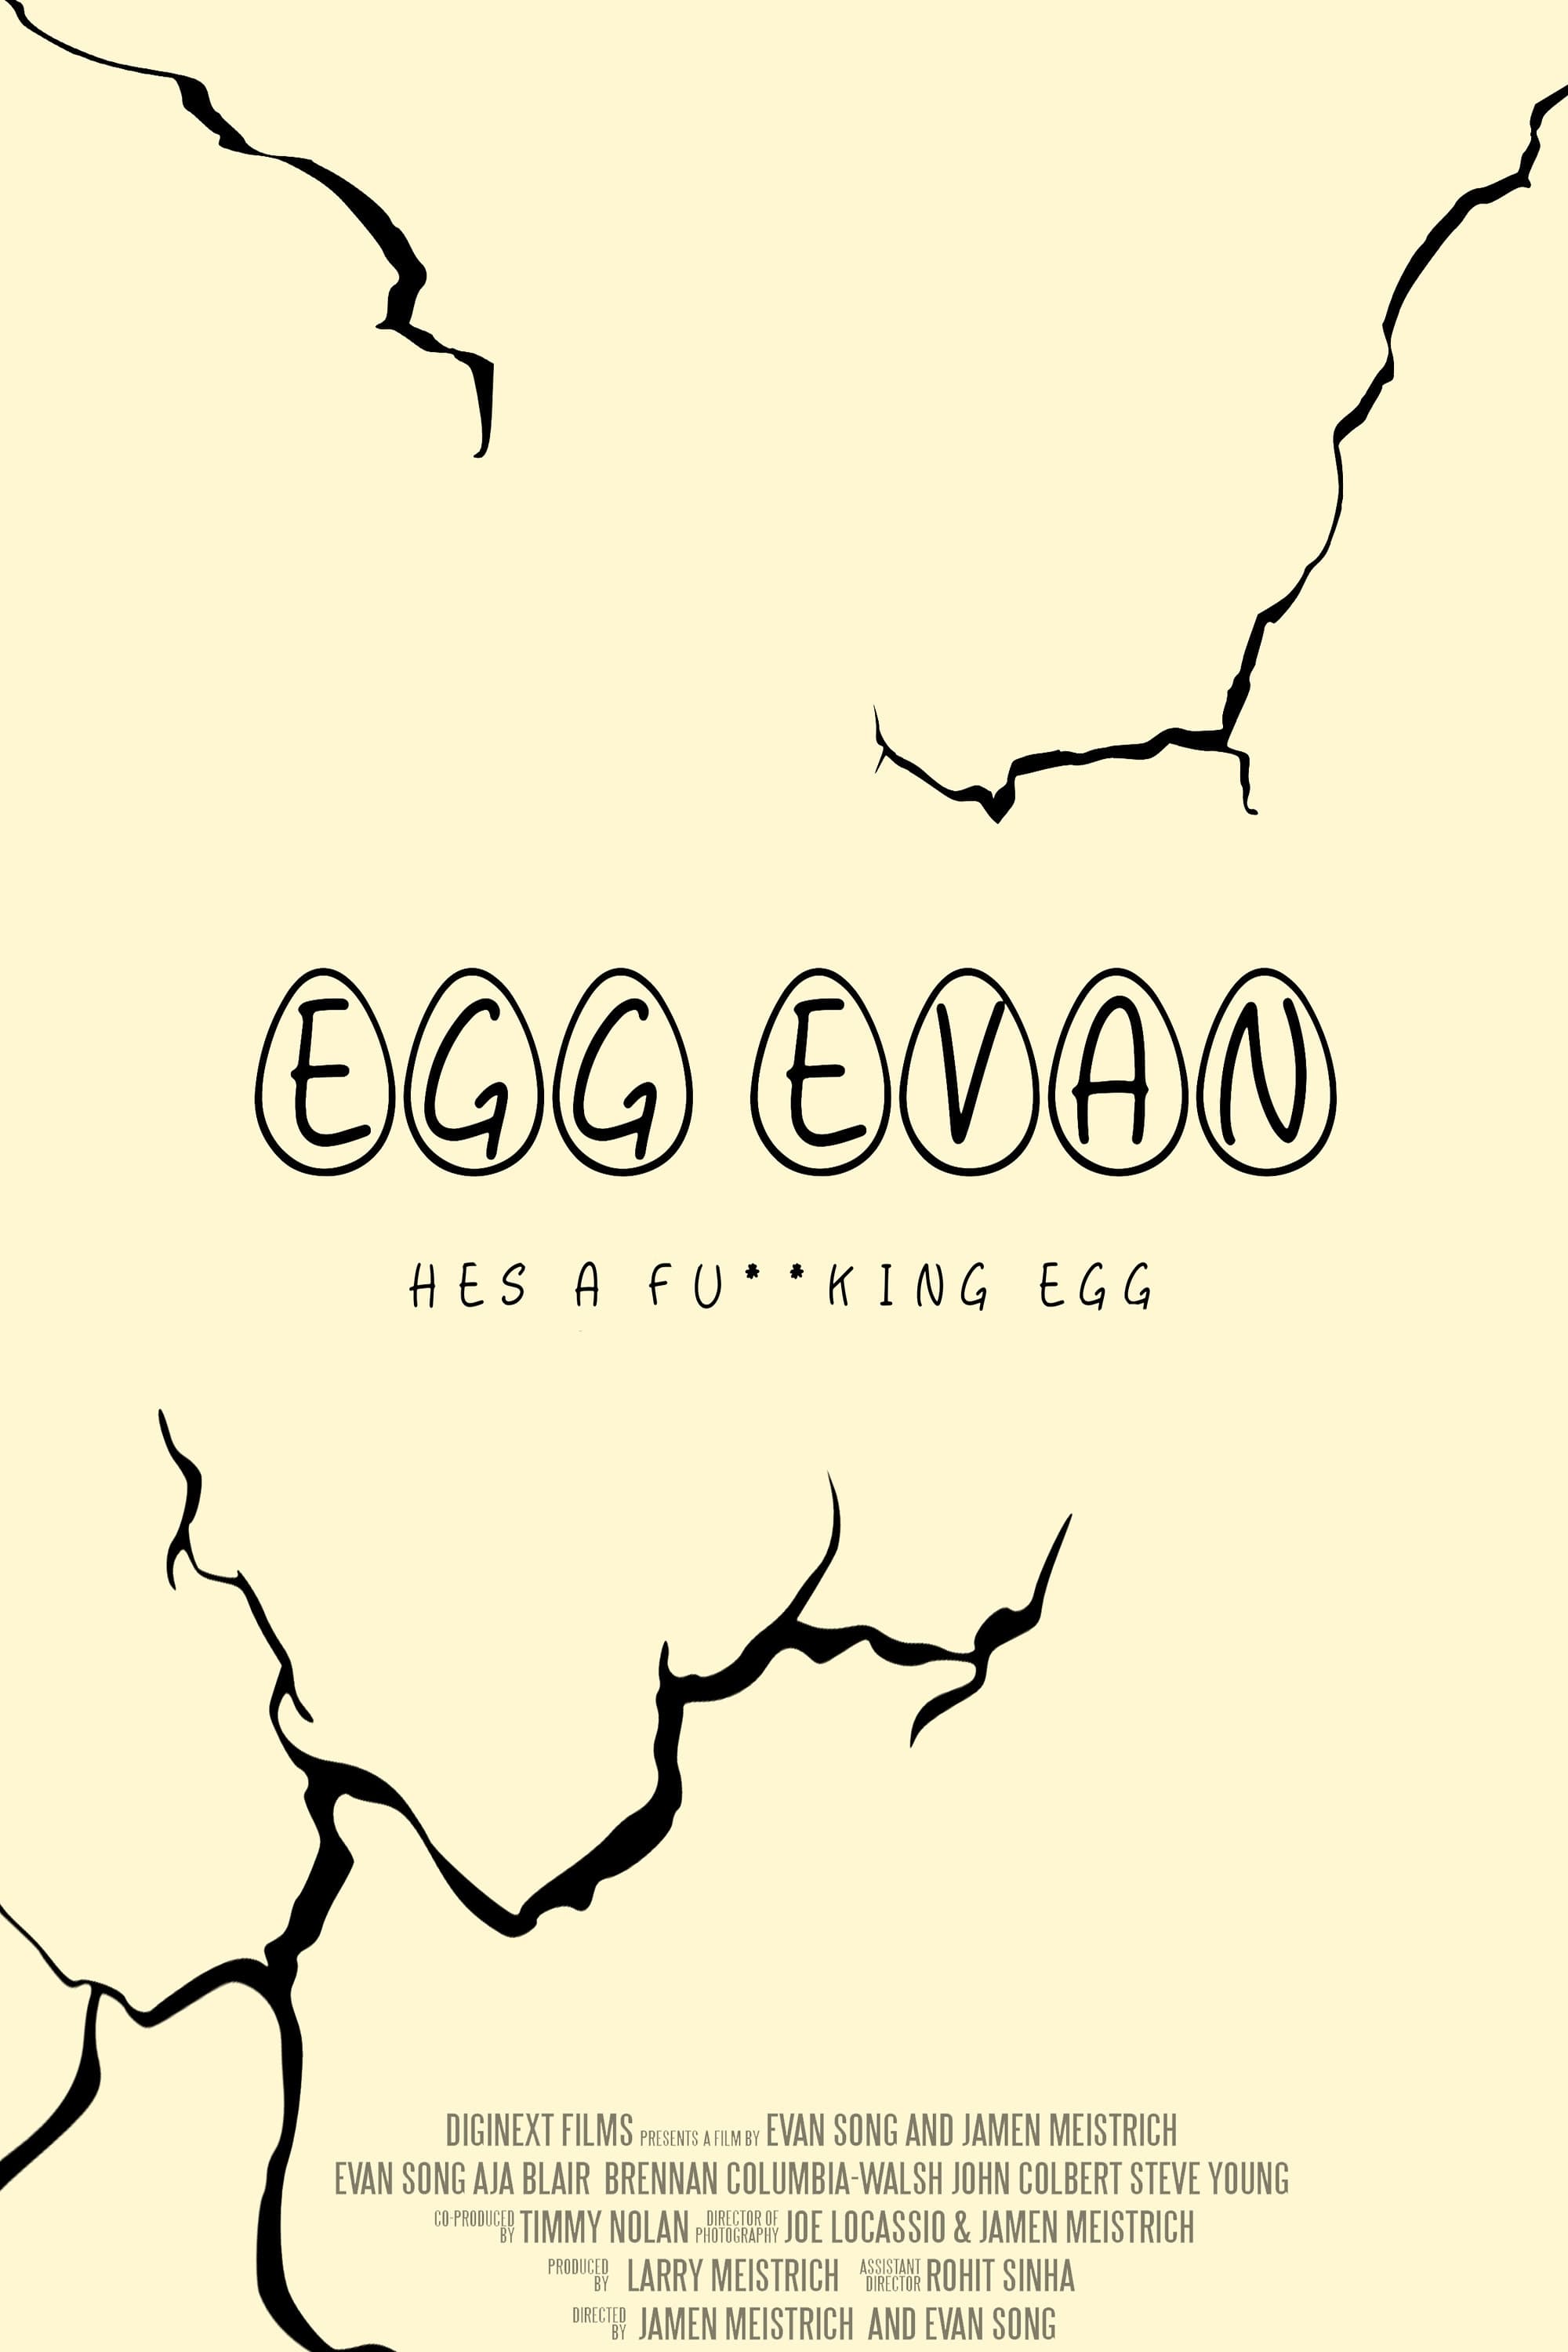 Egg Evan